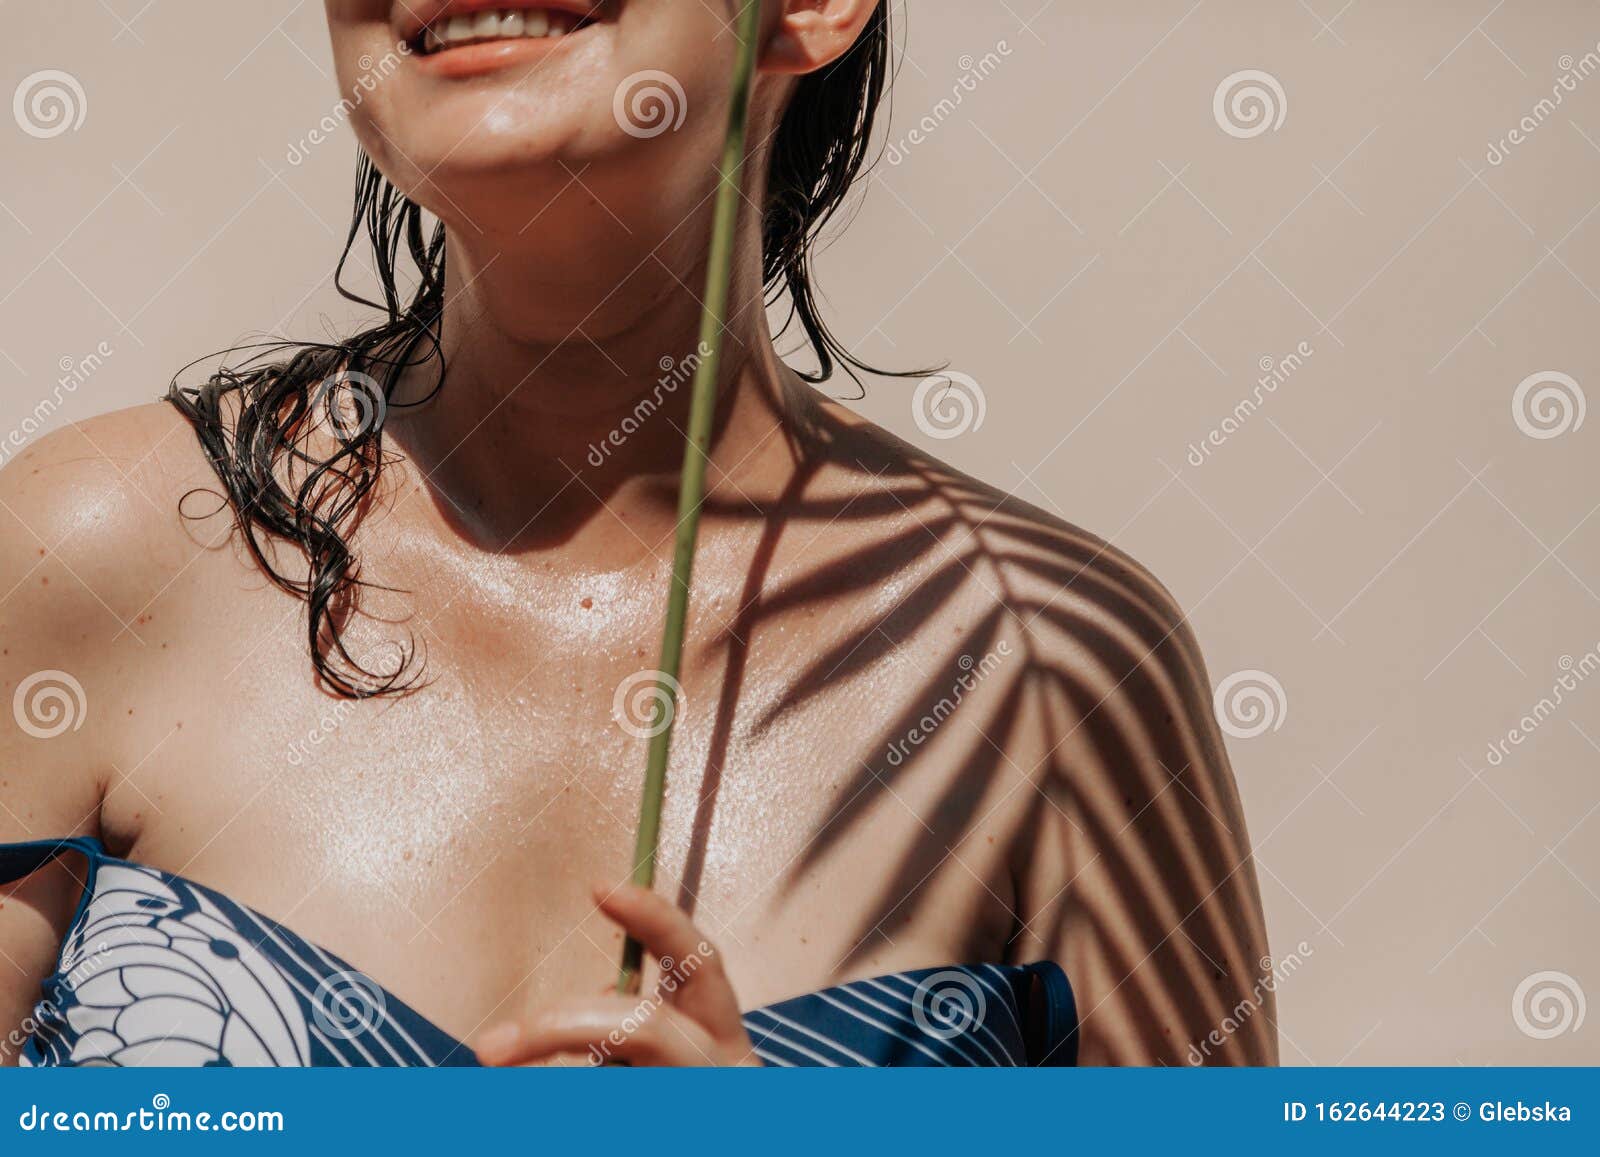 Тень ладони на теле девушки в купальнике. Загоревшая девушка в купальнике стоит на светлом фоне На левом плече находится тень от ладони с узкими листьями